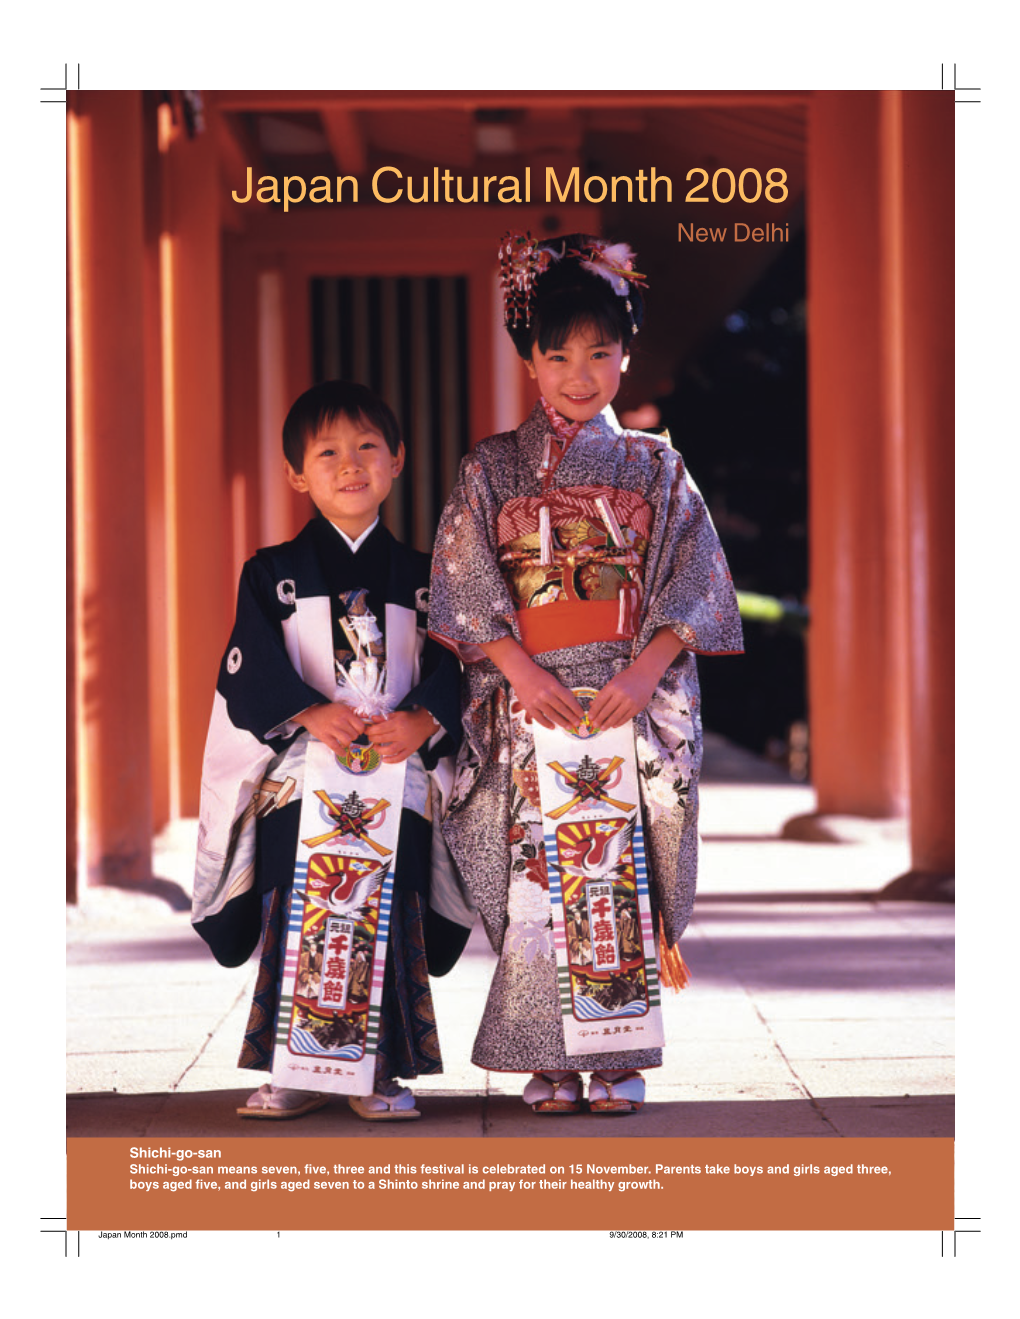 Japan Cultural Month 2008 New Delhi